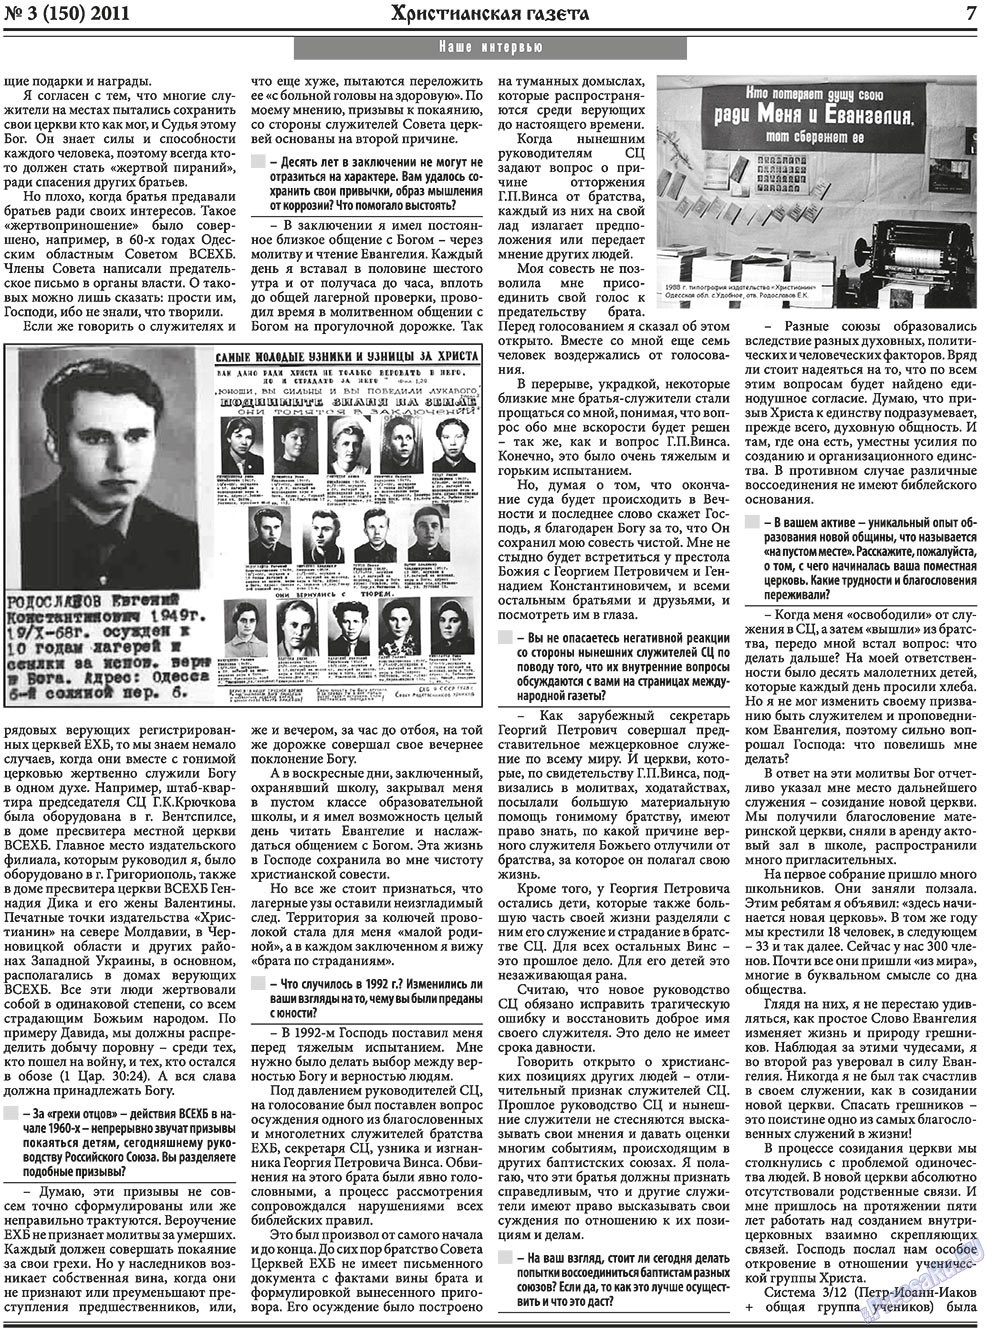 Христианская газета, газета. 2011 №3 стр.7